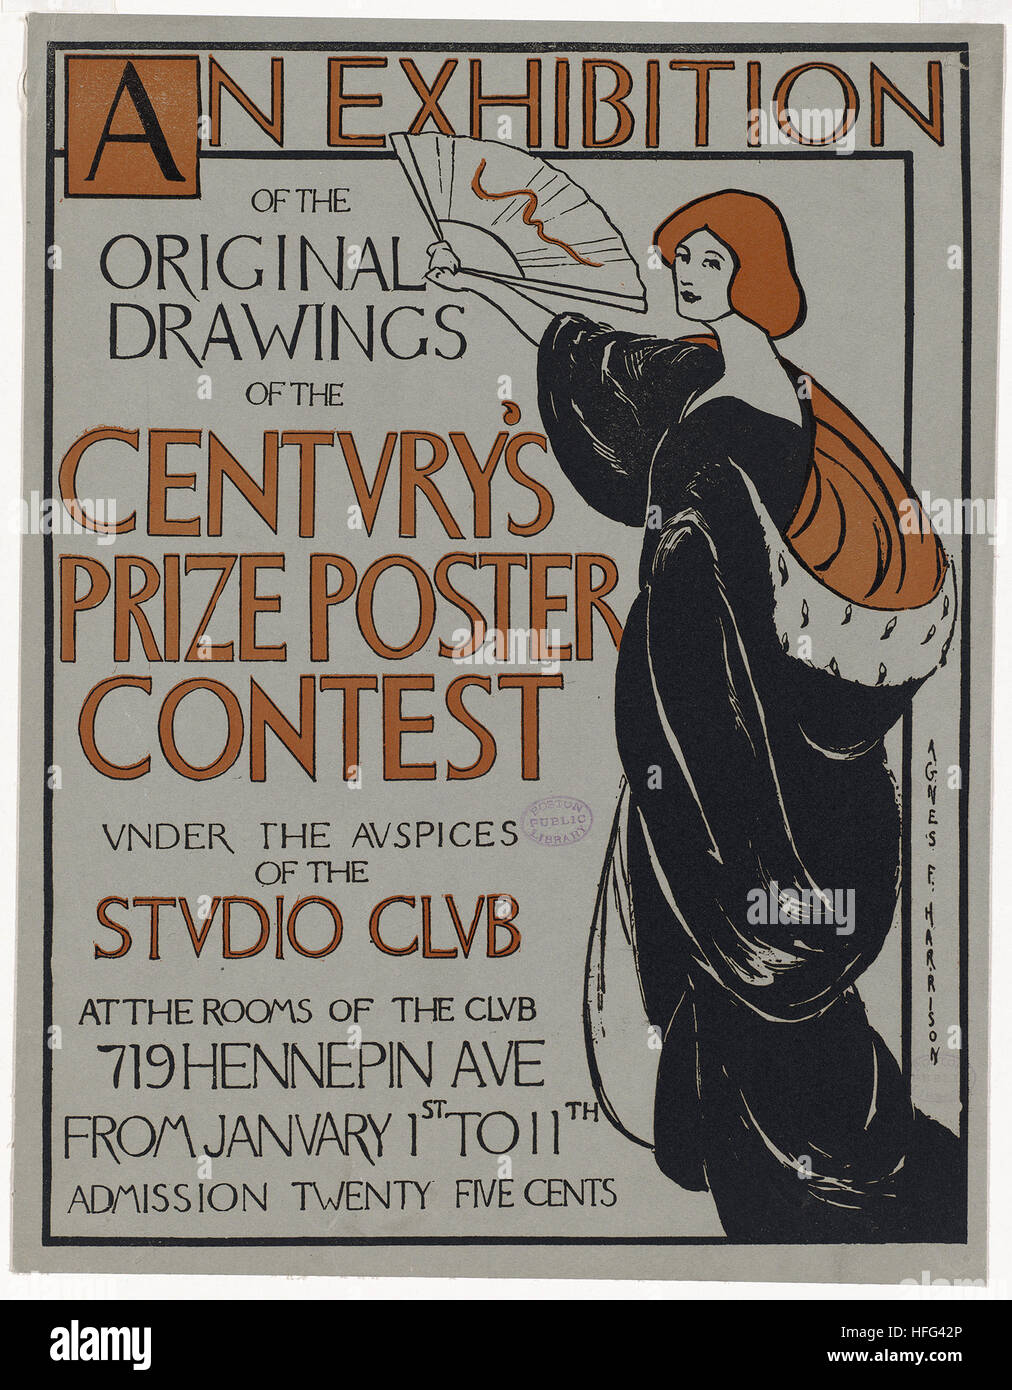 La exposición de los dibujos originales del siglo premio del concurso de carteles, bajo los auspicios del Club Studio Foto de stock